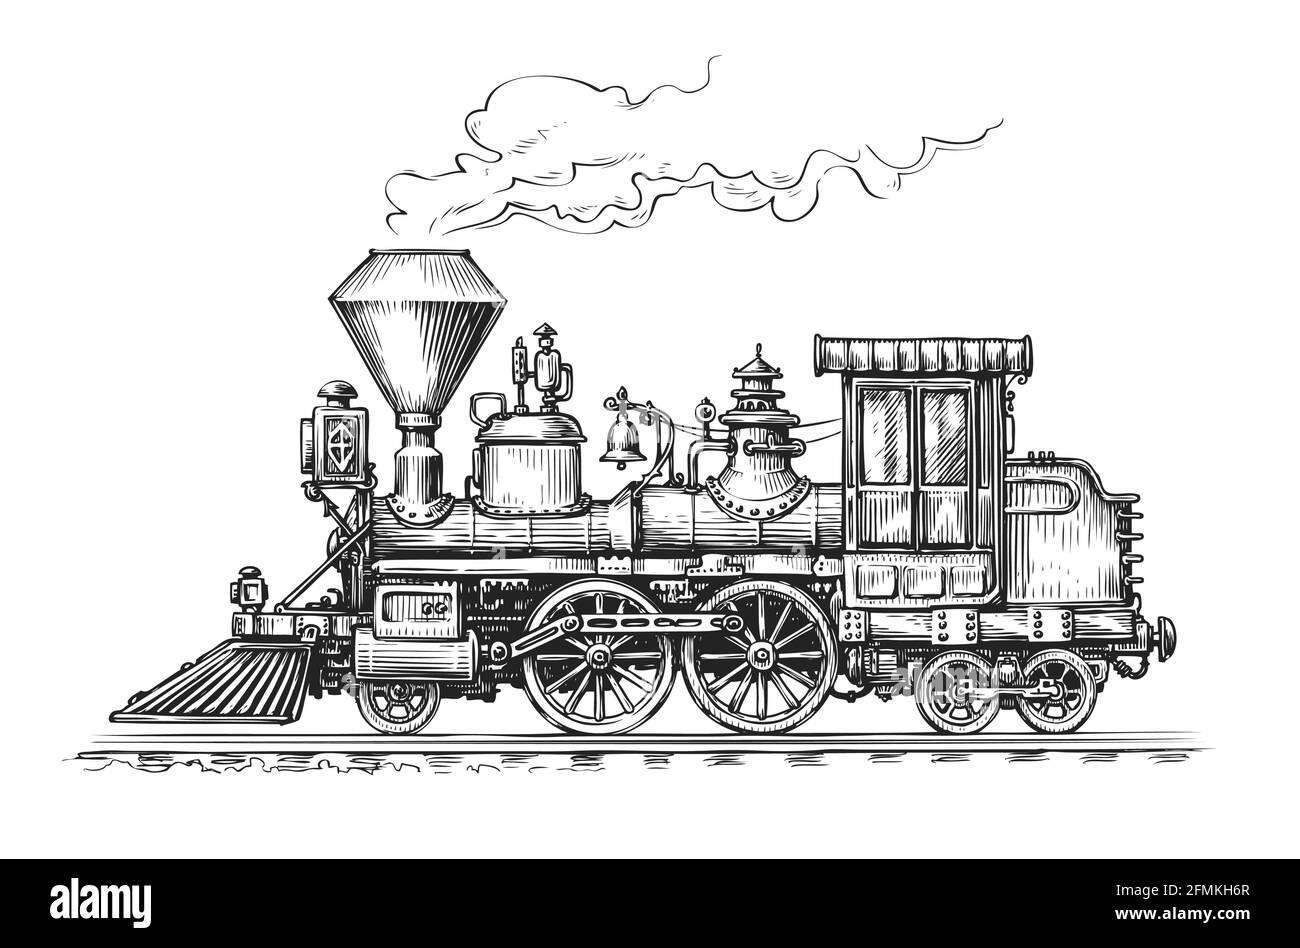 Schéma de transport de locomotive à vapeur rétro. Illustration vectorielle vintage de train dessinée à la main Illustration de Vecteur